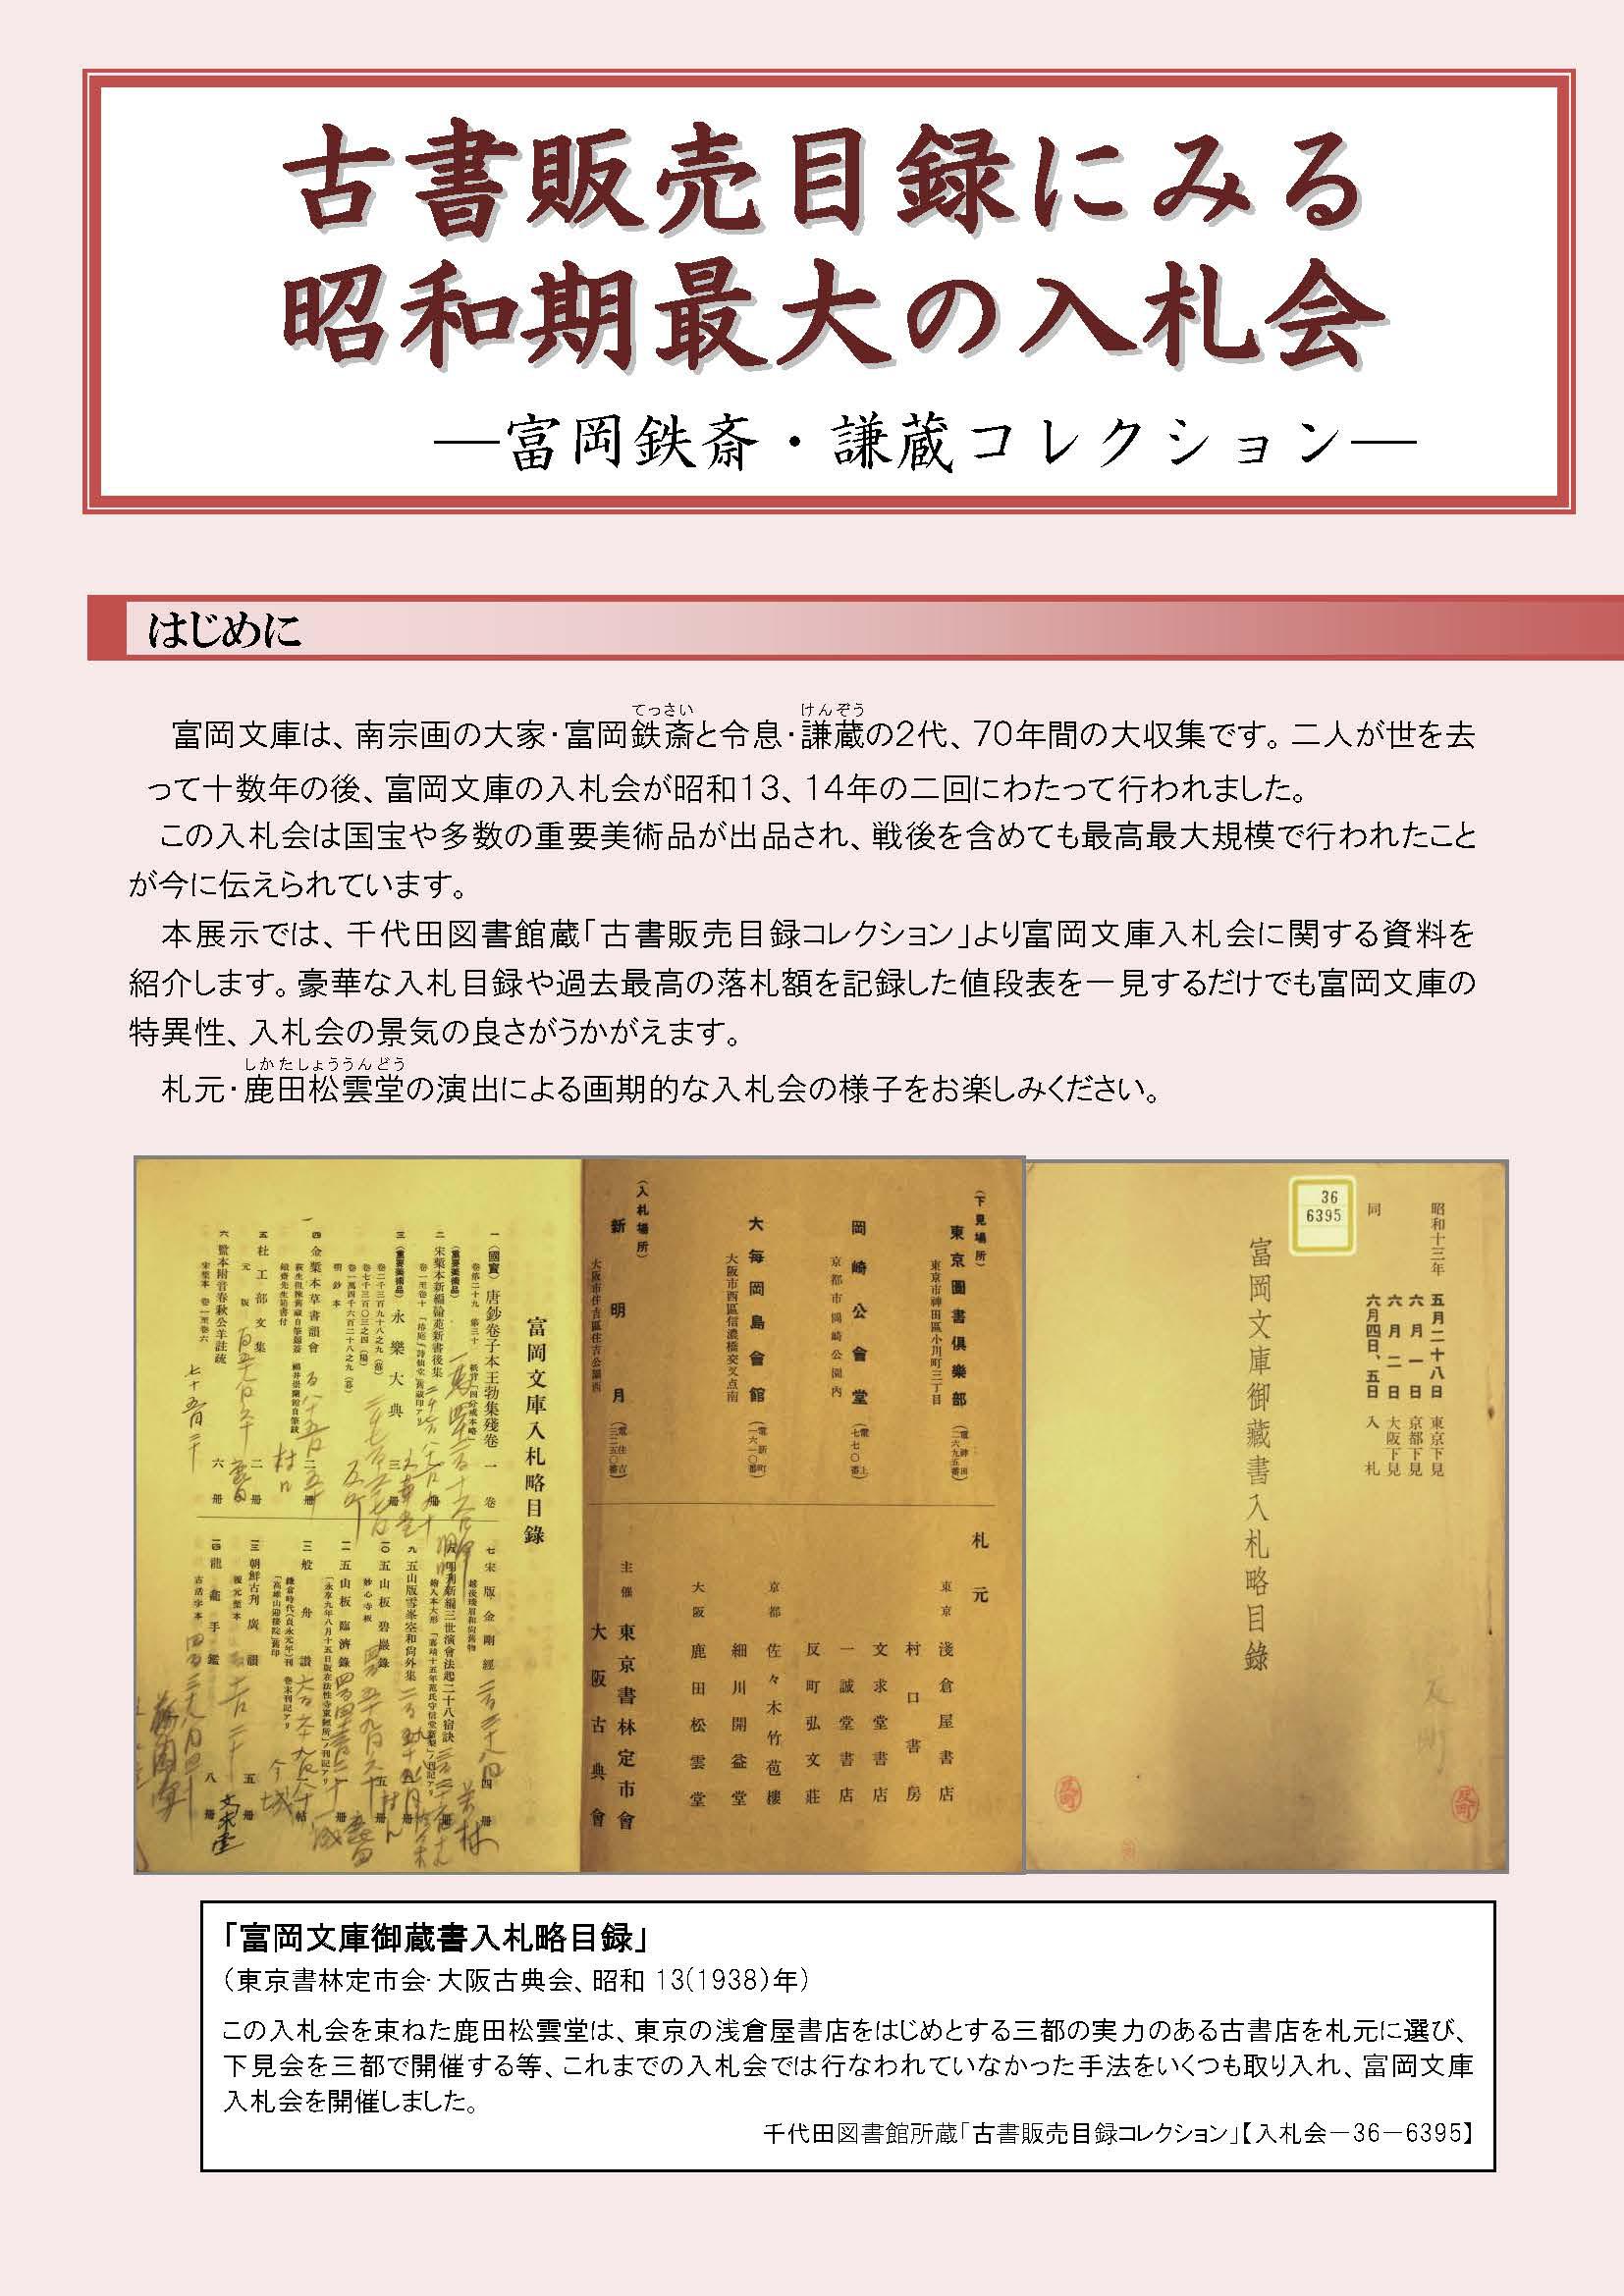 「古書販売目録にみる昭和期最大の入札会」表紙の写真